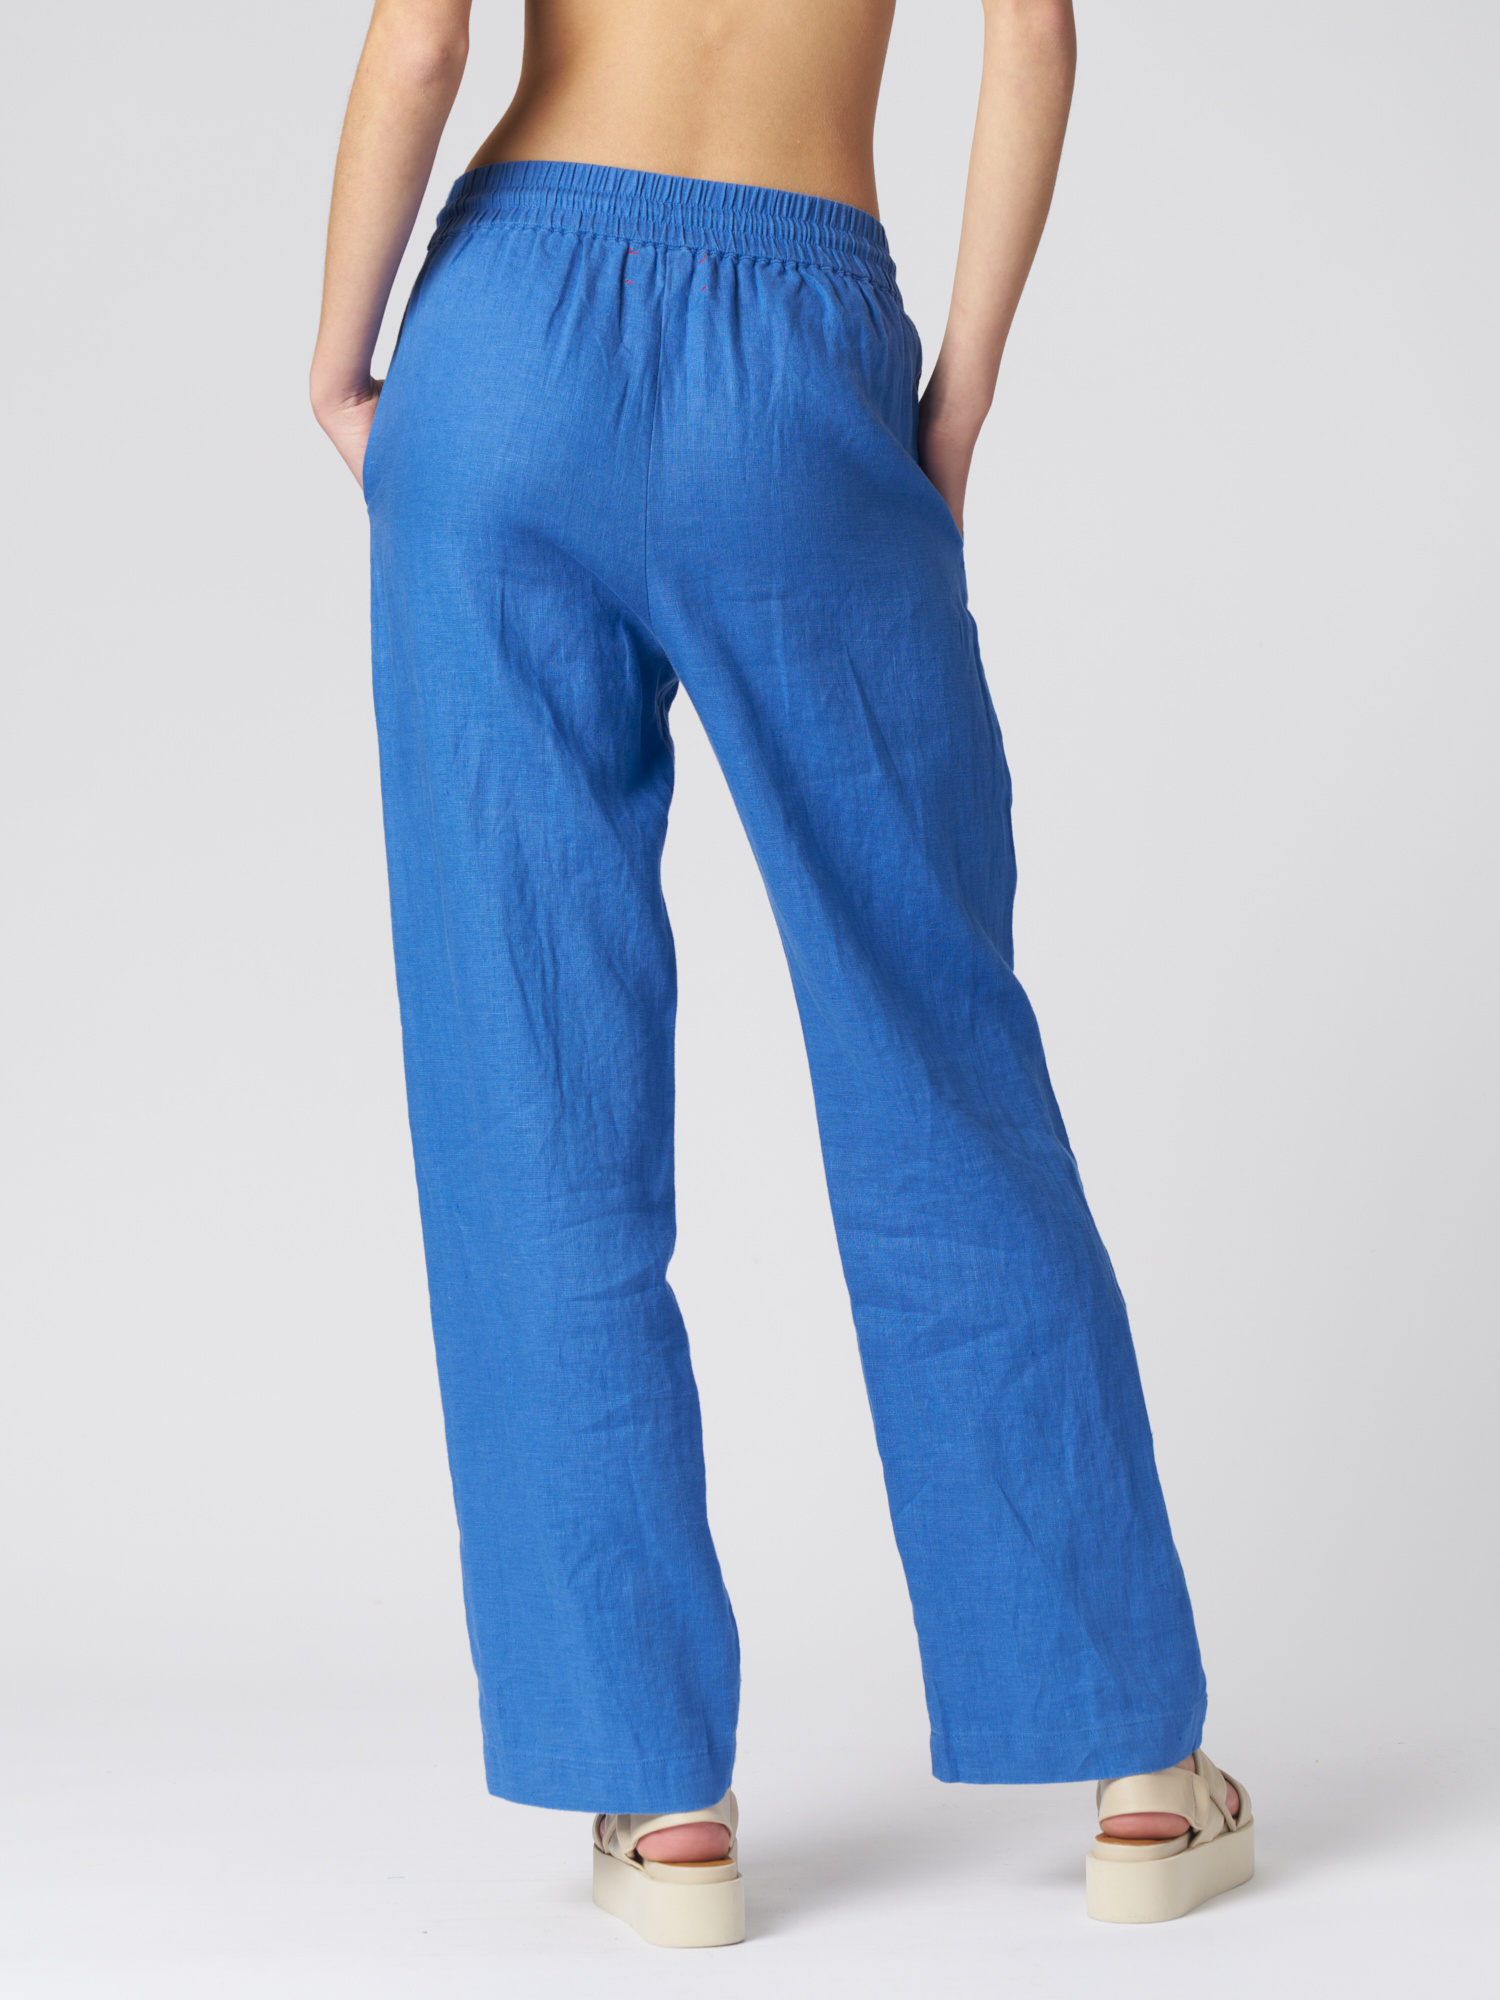 royal blue: Women's Pants